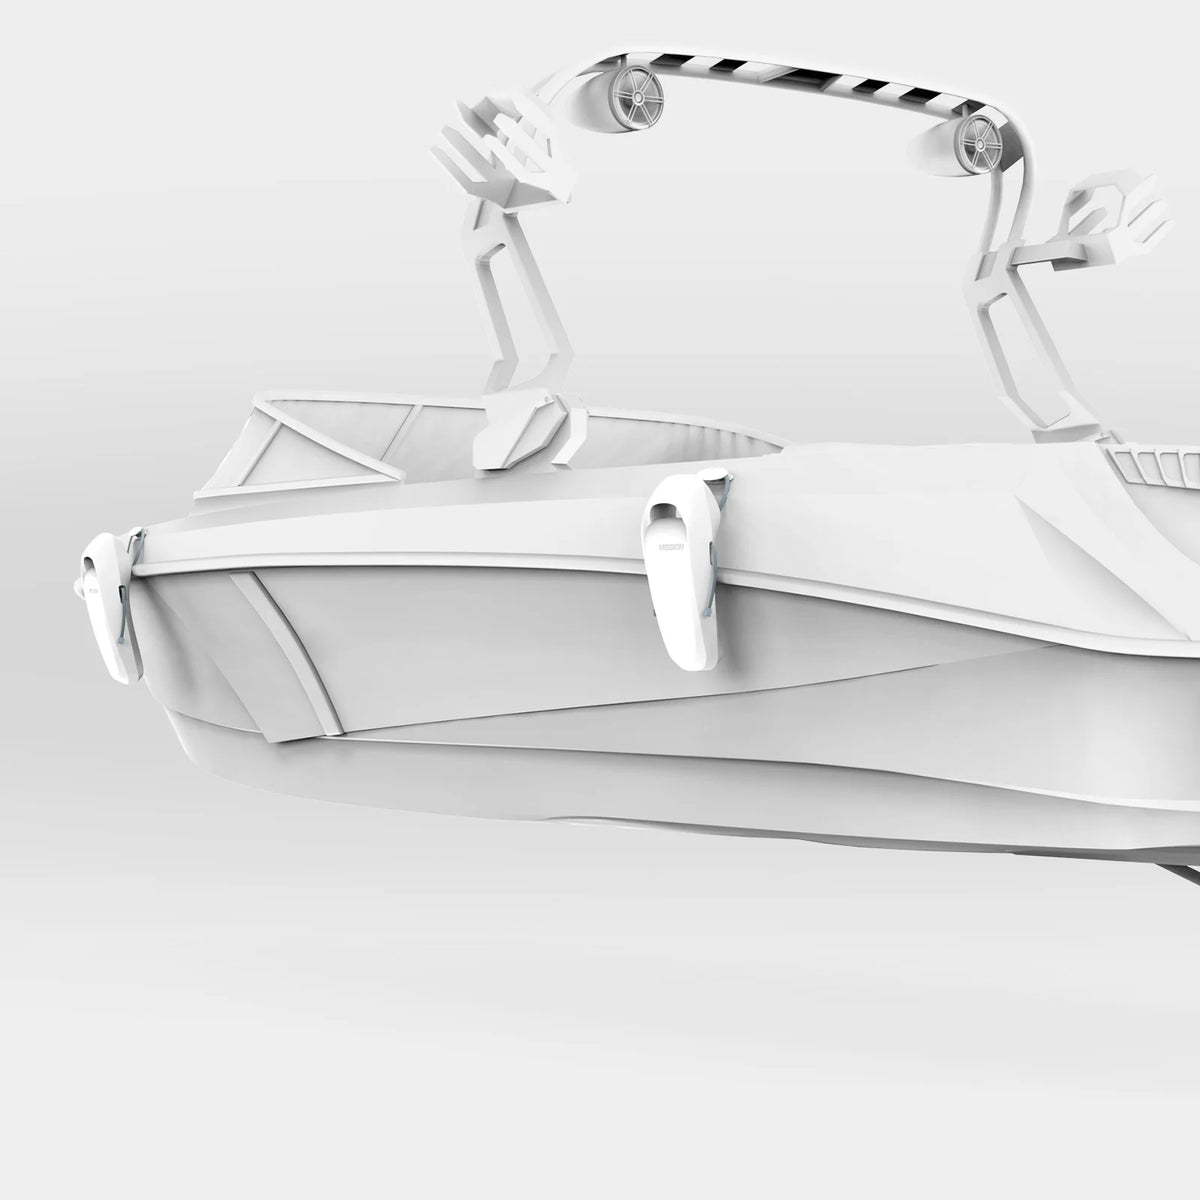 Sentry Fenders 2.0 | Boat Fenders 2 Pack - White